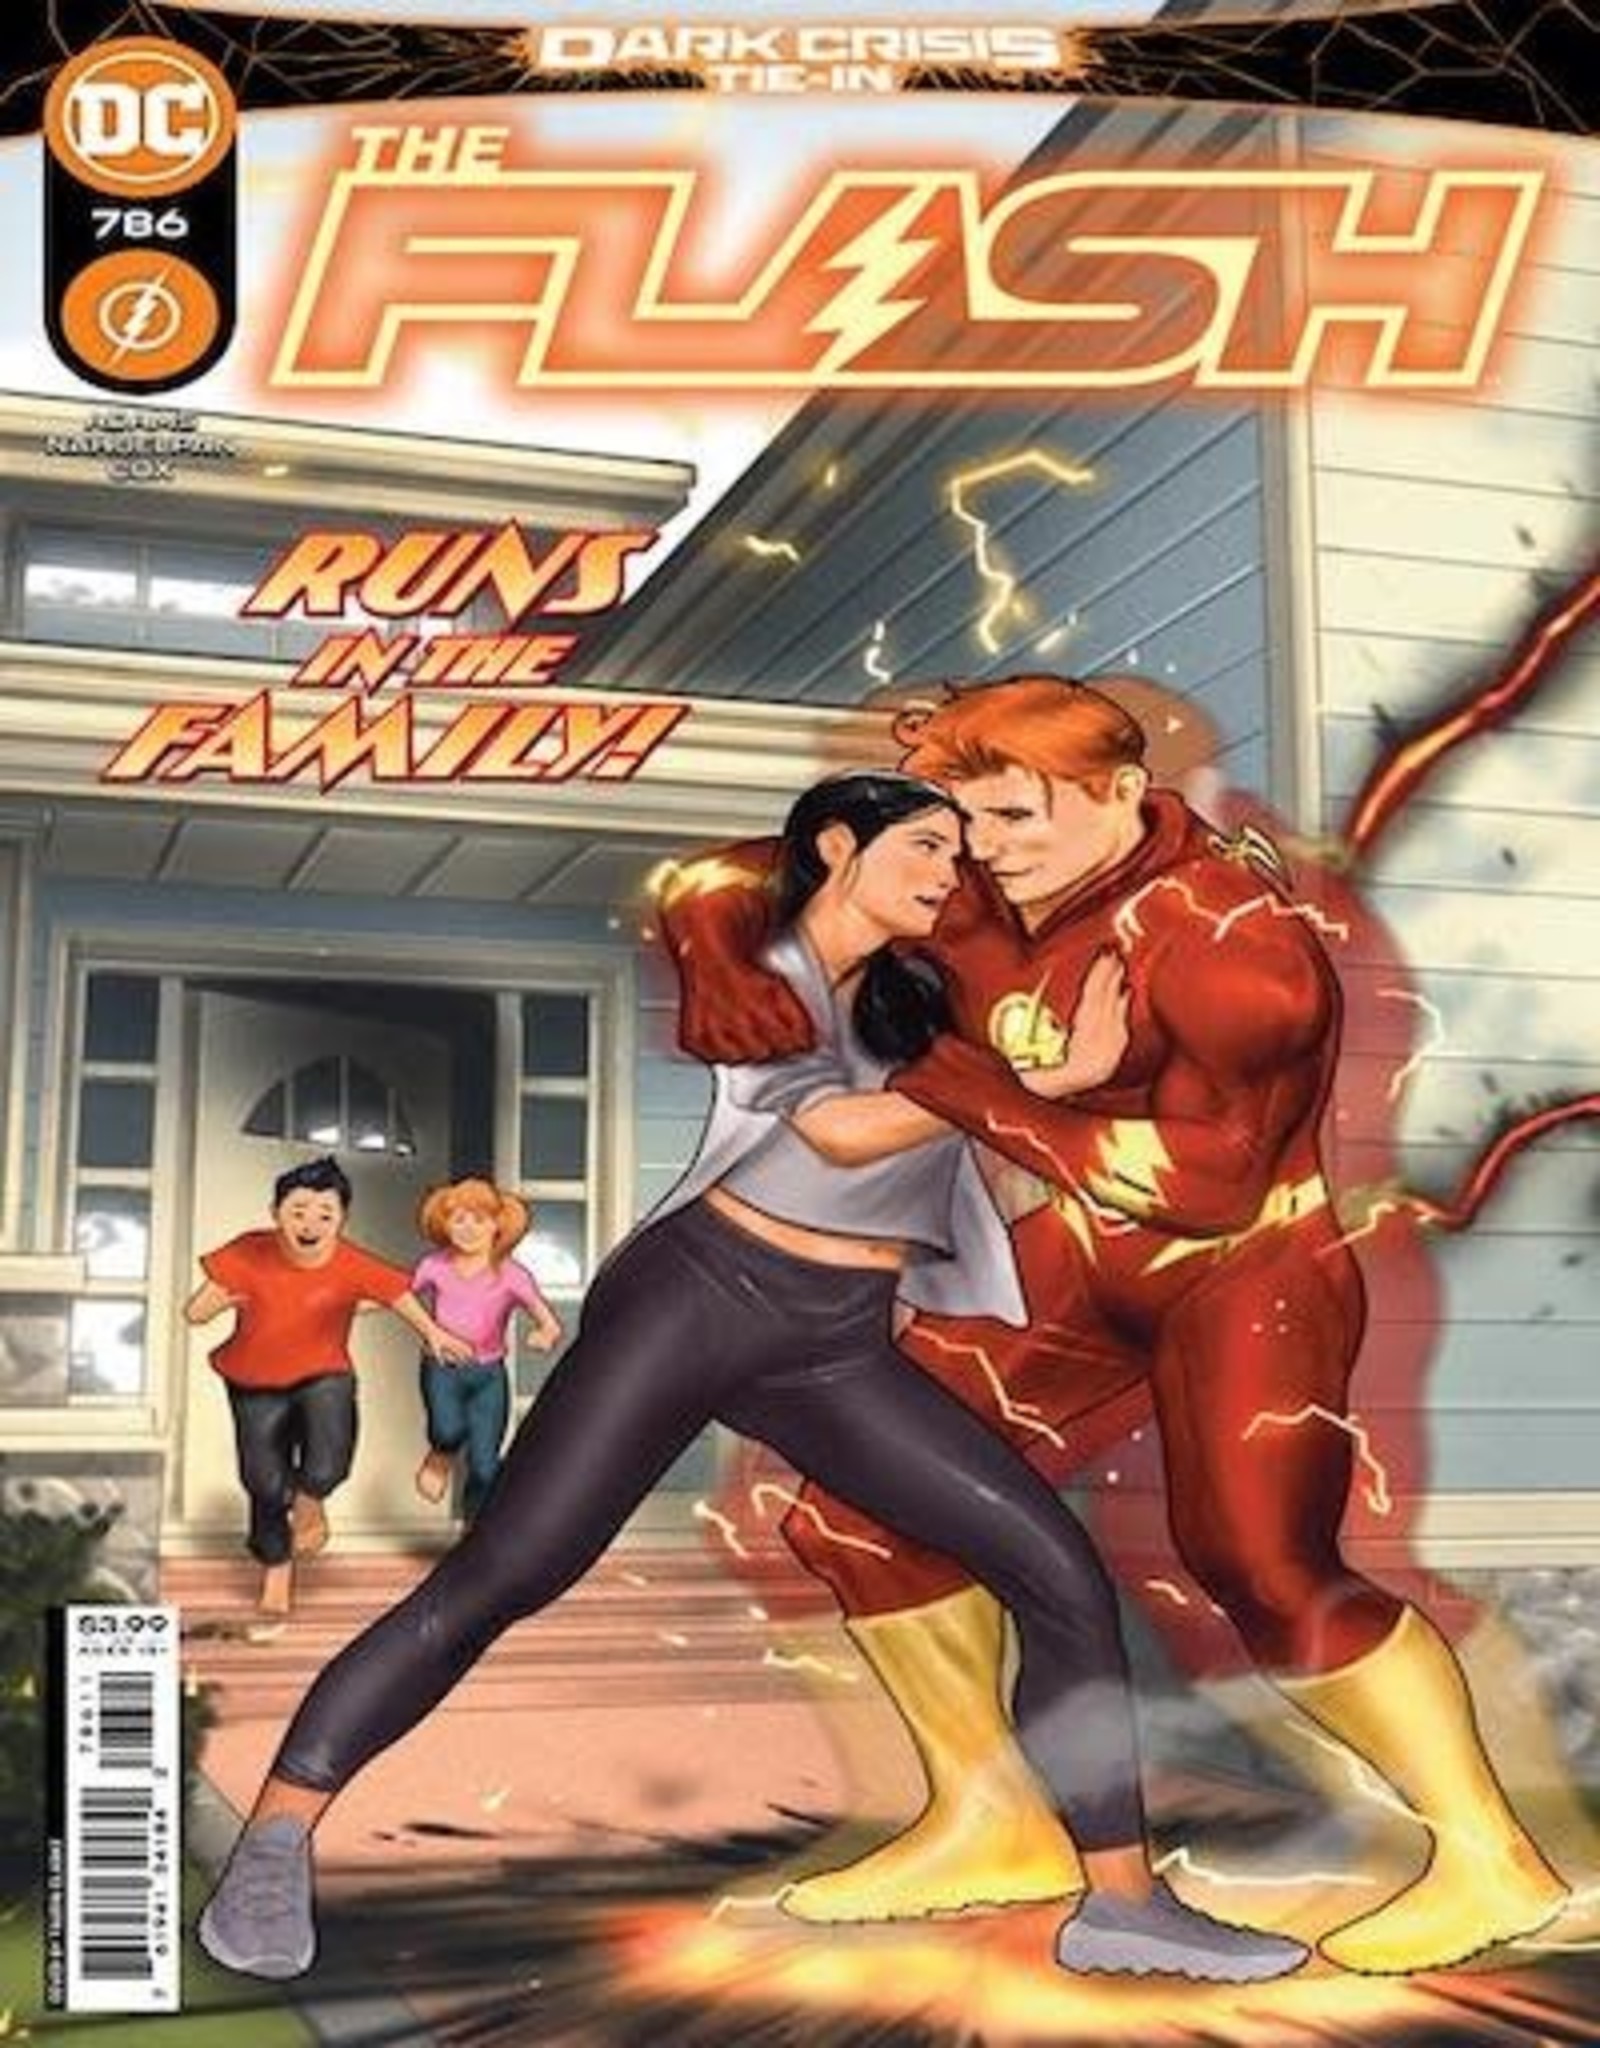 DC Comics Flash #786 Cvr A Taurin Clarke (Dark Crisis)